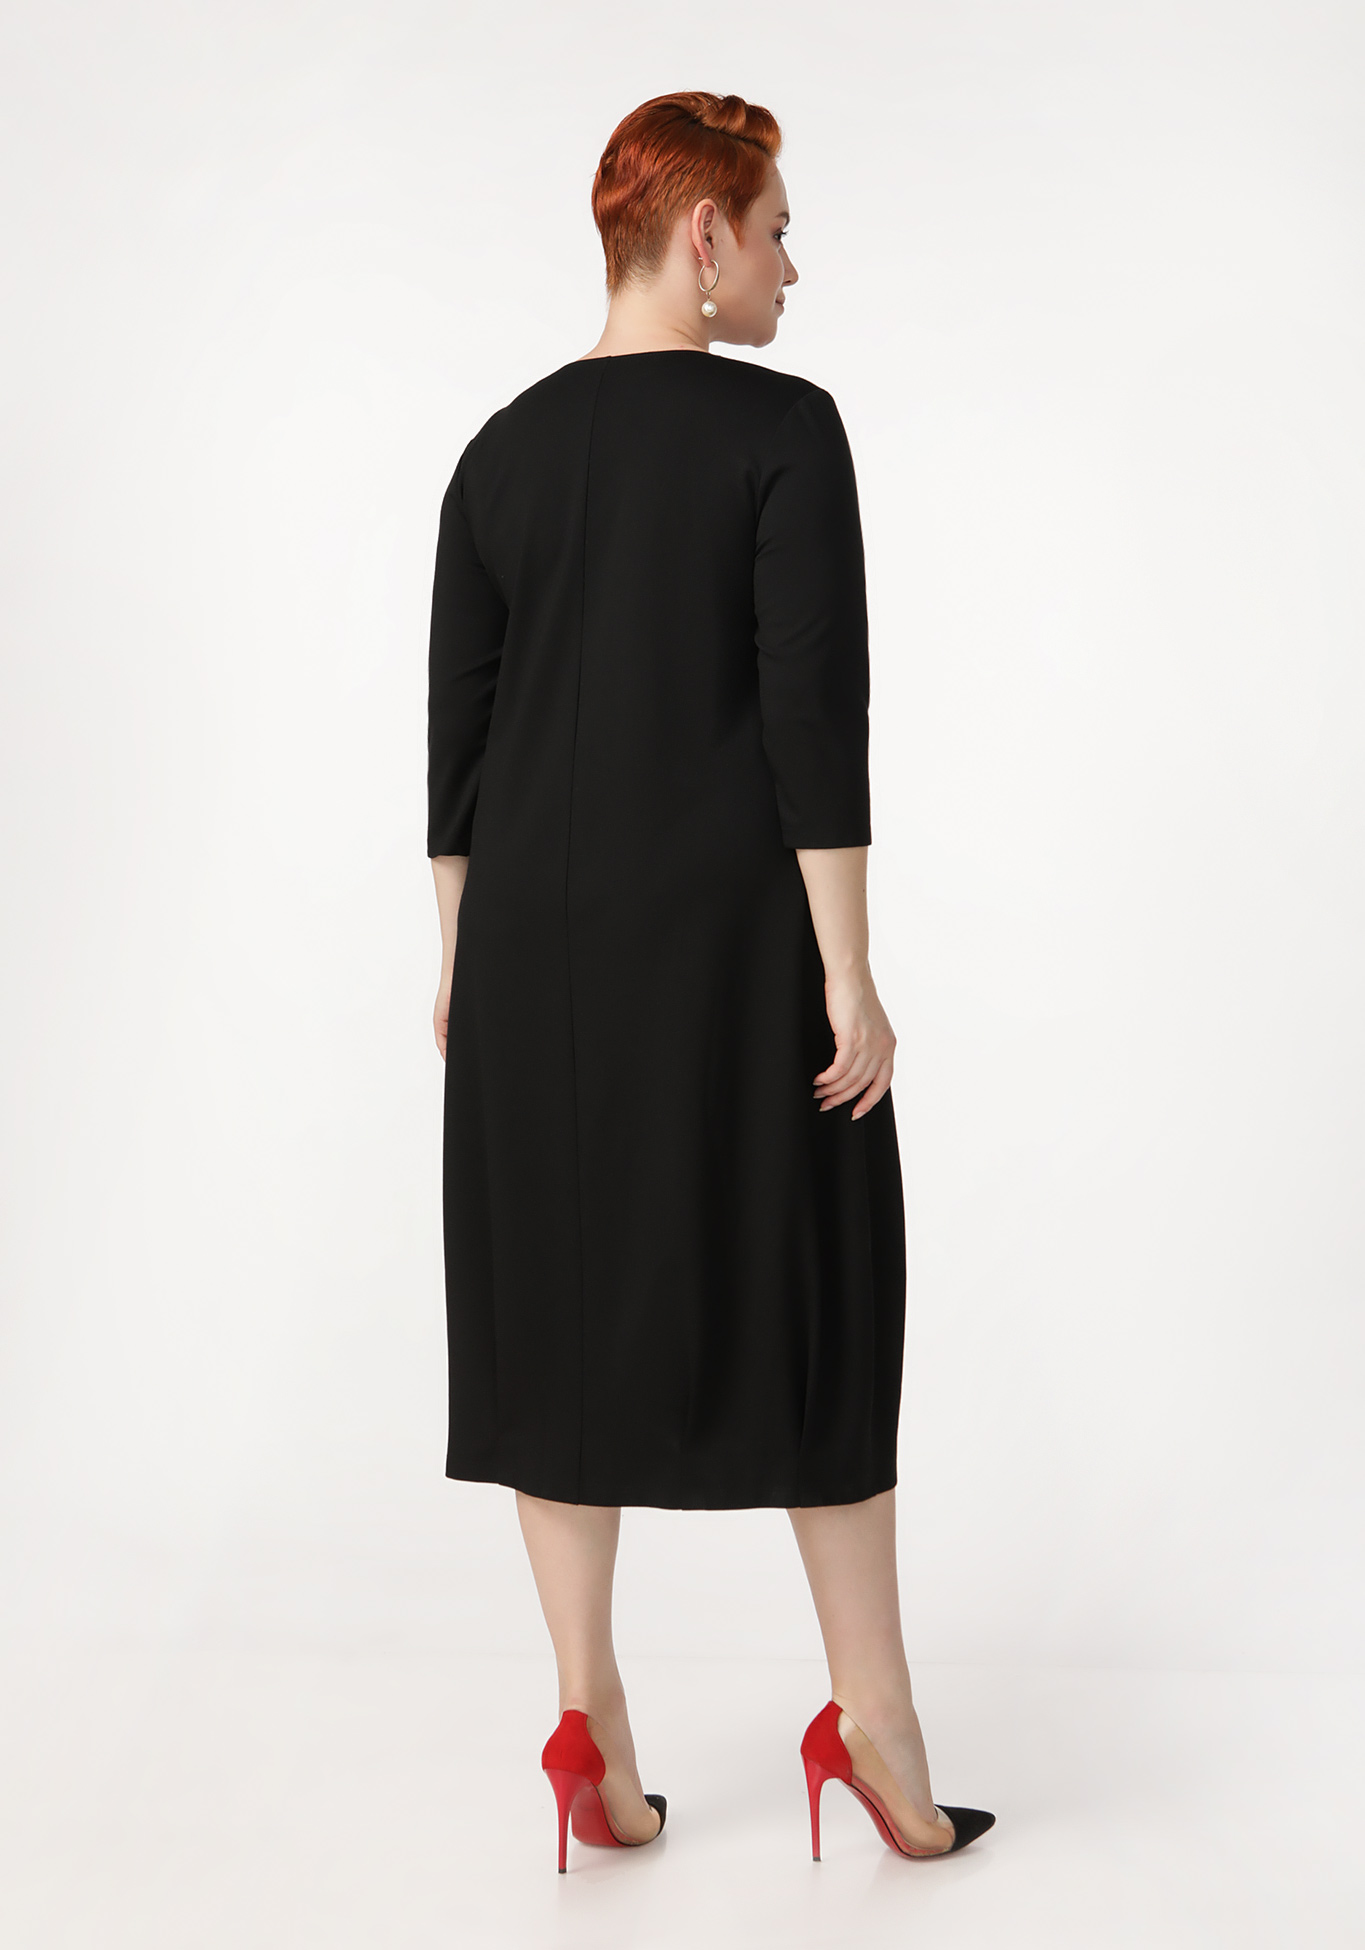 Платье «Комфортное времяпрепровождение» ZORY, размер 62, цвет черный - фото 6